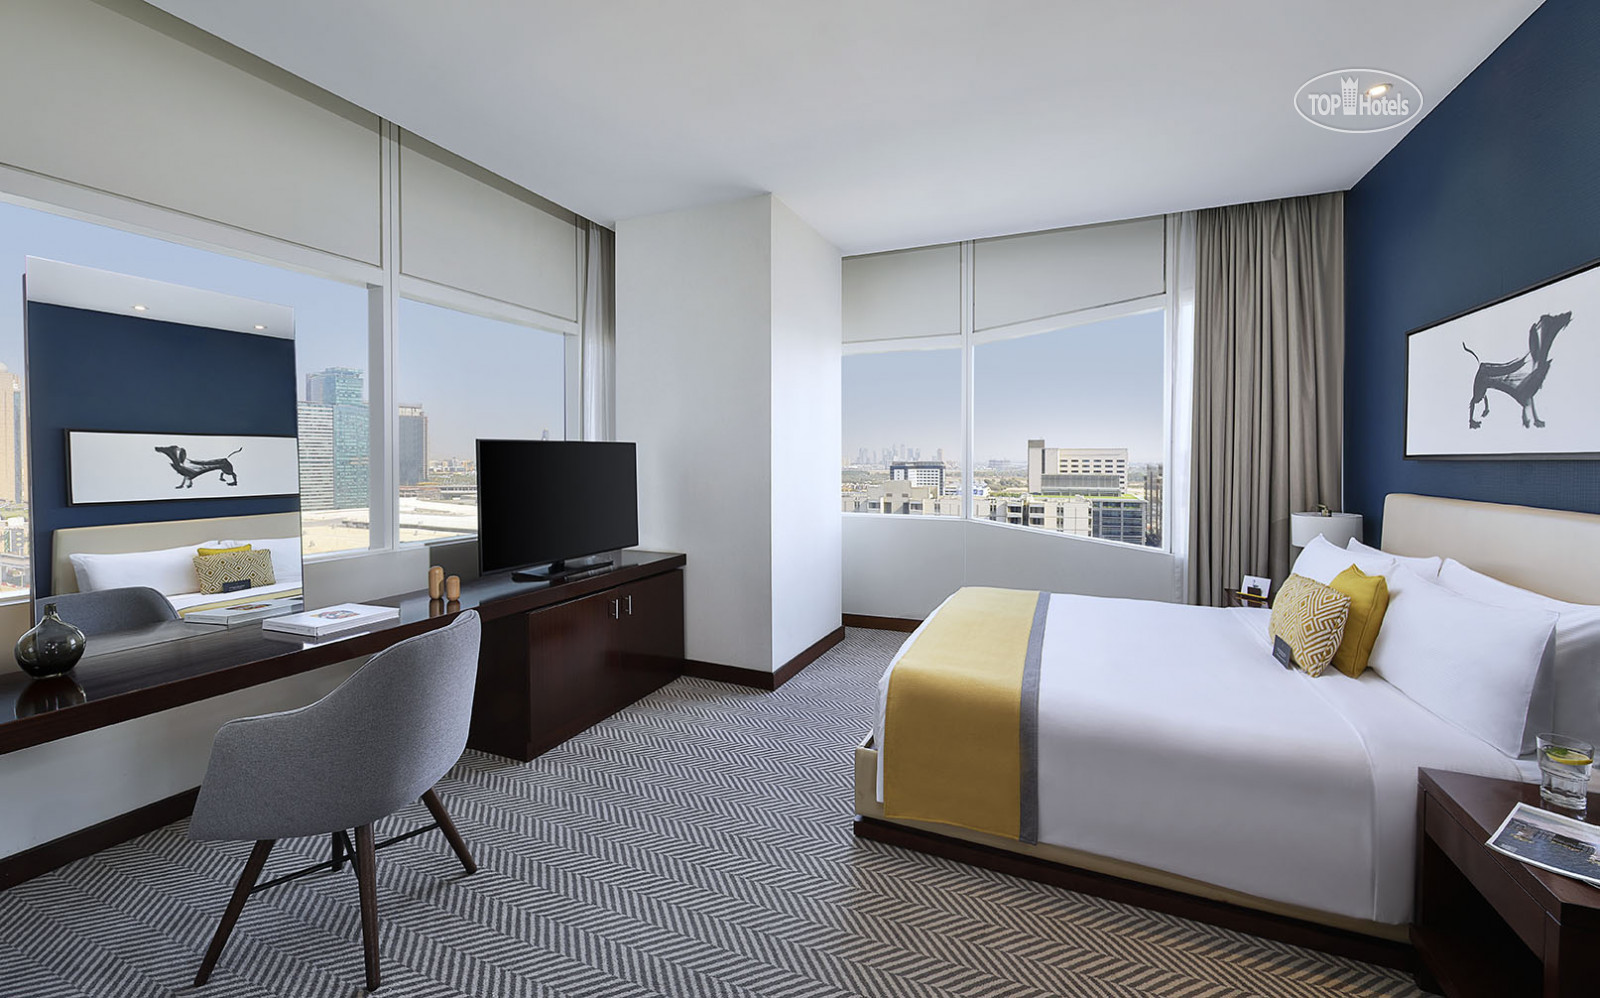 2 bedroom suite. VOCO Hotel Дубай. VOCO Dubai 5. VOCO Dubai (ex. Nassima Royal Hotel) 5*. VOCO Dubai an IHG Hotel 5 Дубай.